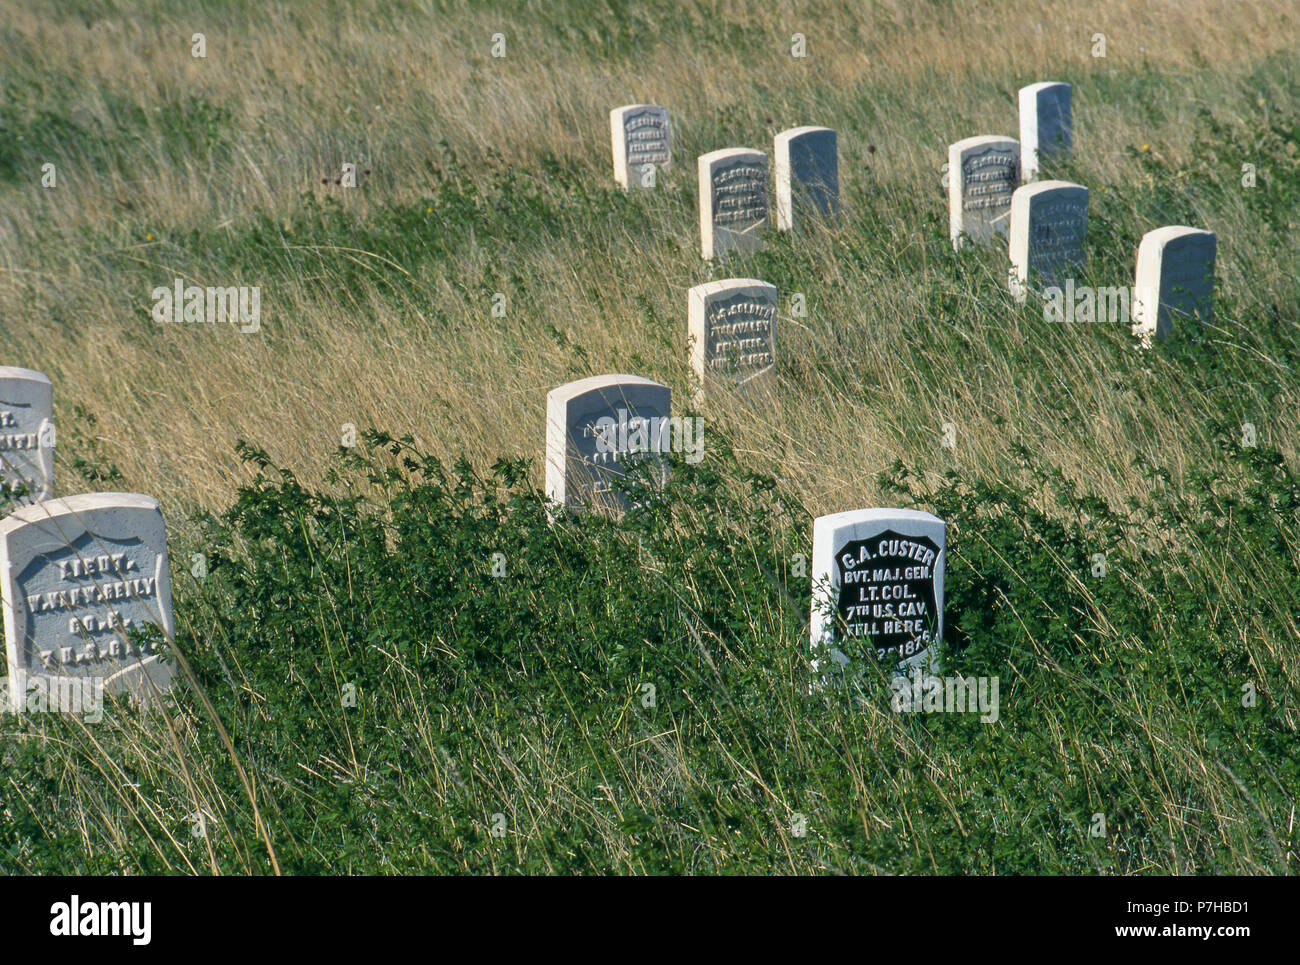 Custer Hill Markierungen, wo General Custer fiel und Einrichtungen 7 Kavallerie Soldaten gefunden wurden, Little Bighorn Battlefield, Montana. Foto Stockfoto